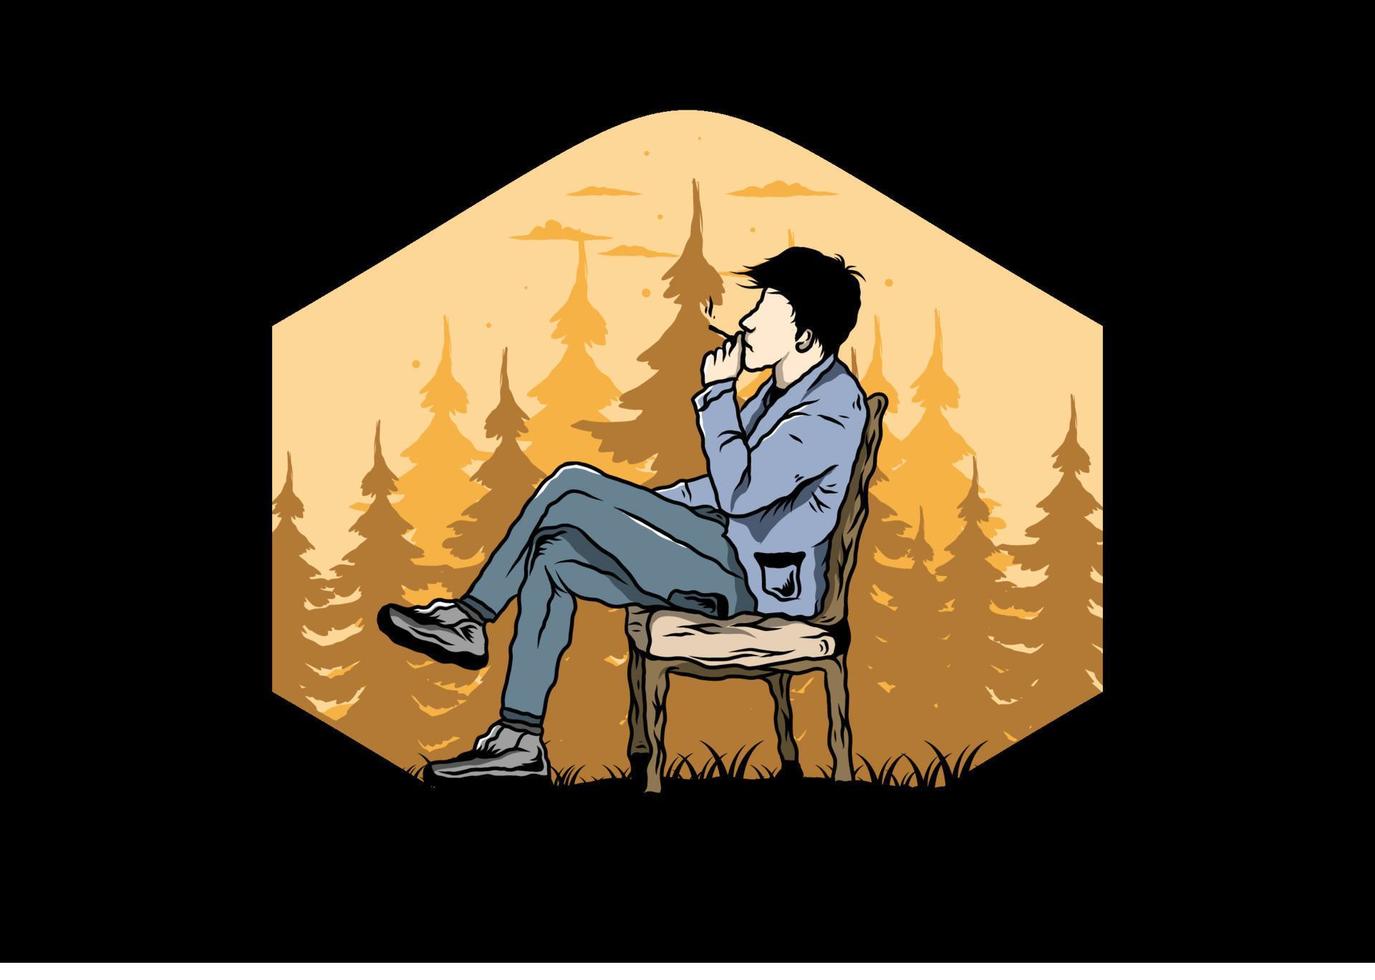 l'uomo si siede sulla sedia e fuma l'illustrazione delle sigarette vettore